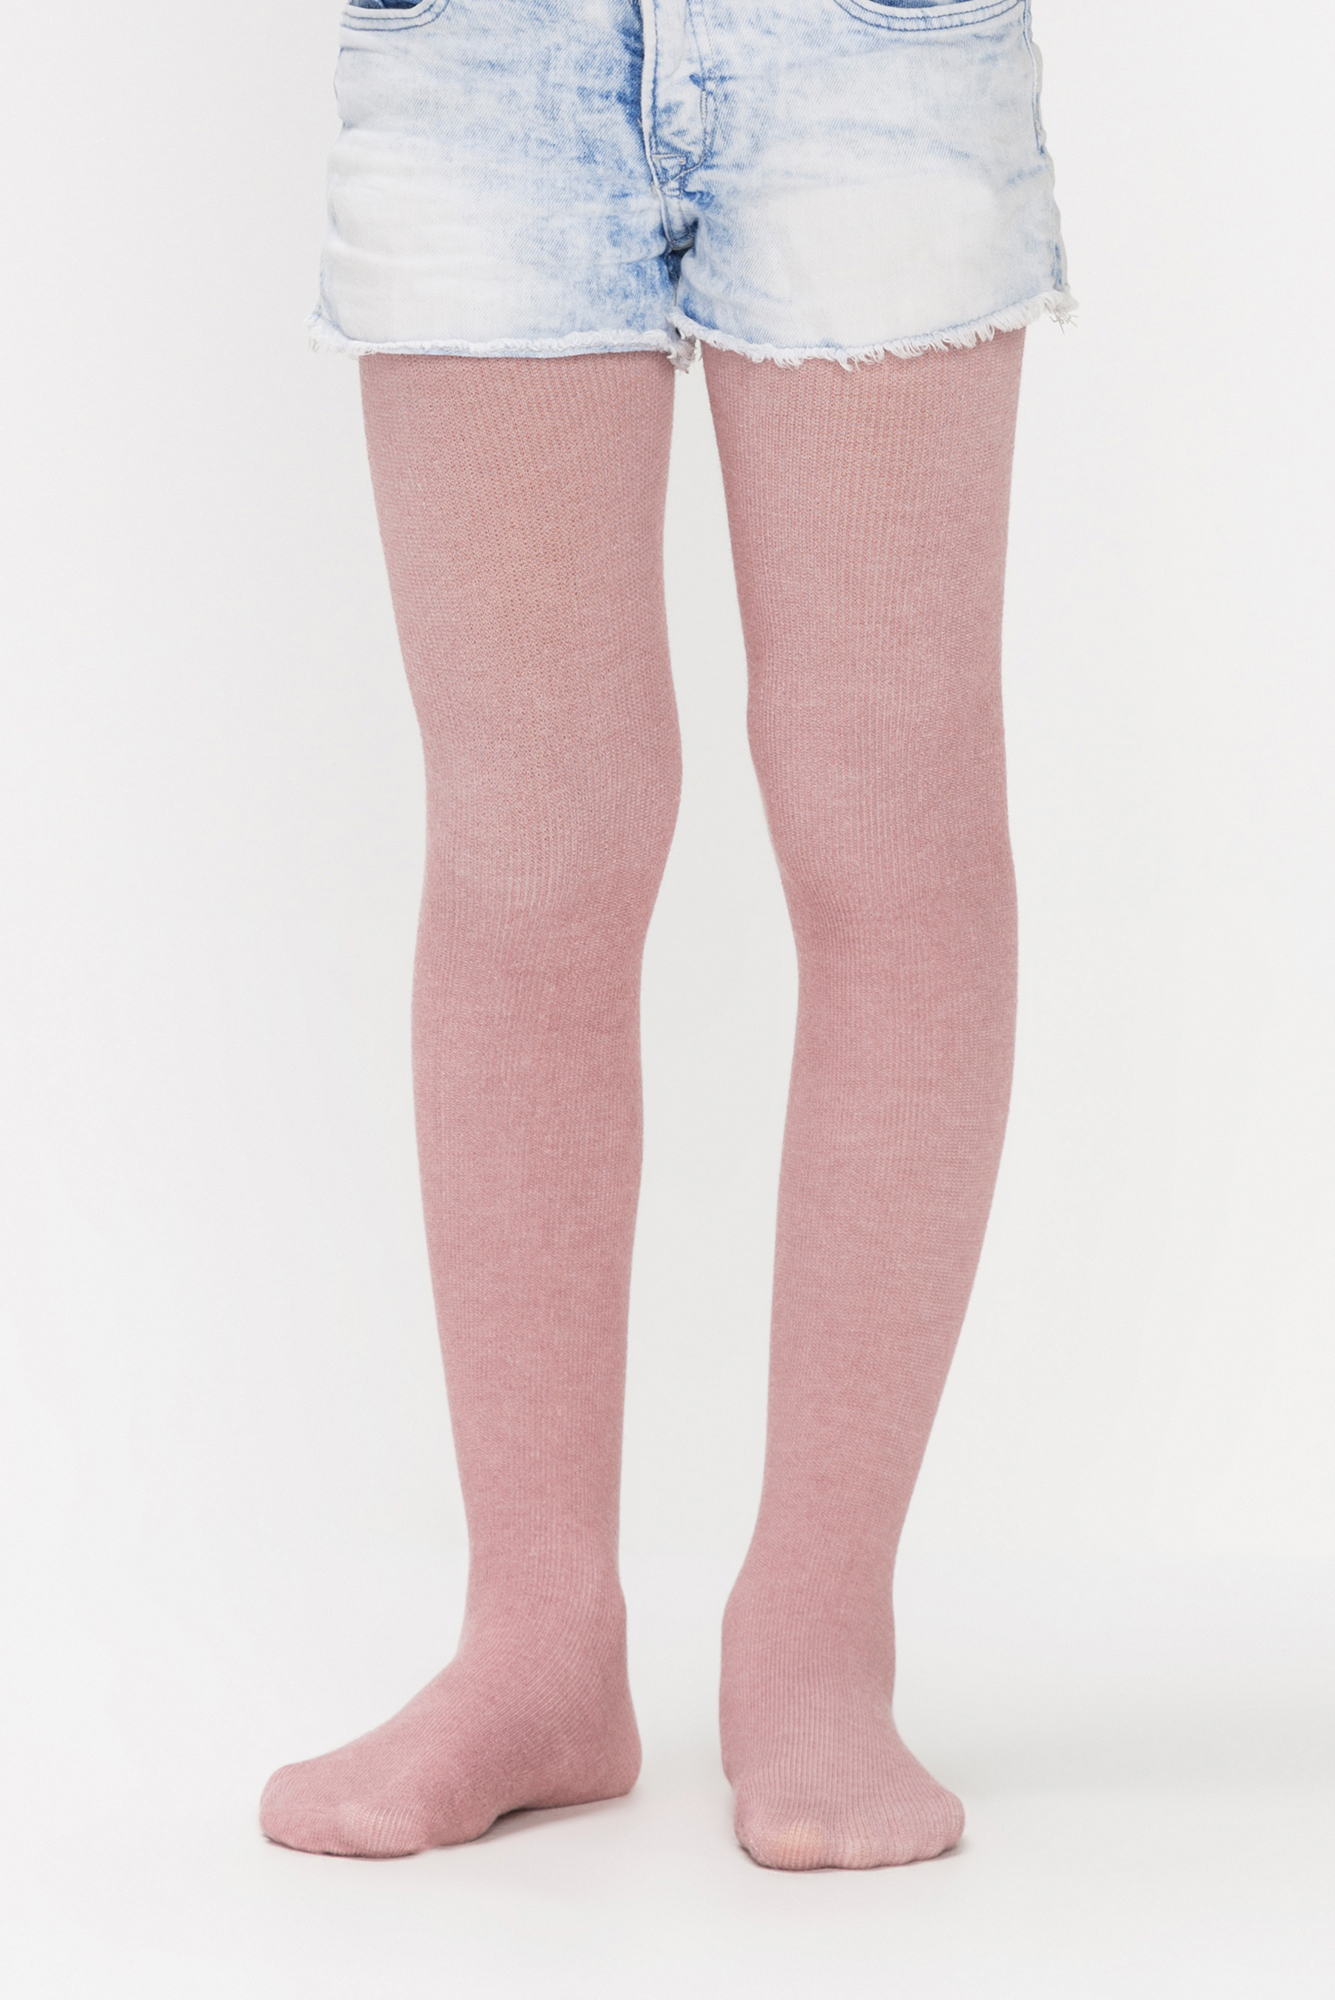 Penti Pembe Kız Çocuk Angora-Yün Karışımı Külotlu Çorap. 1